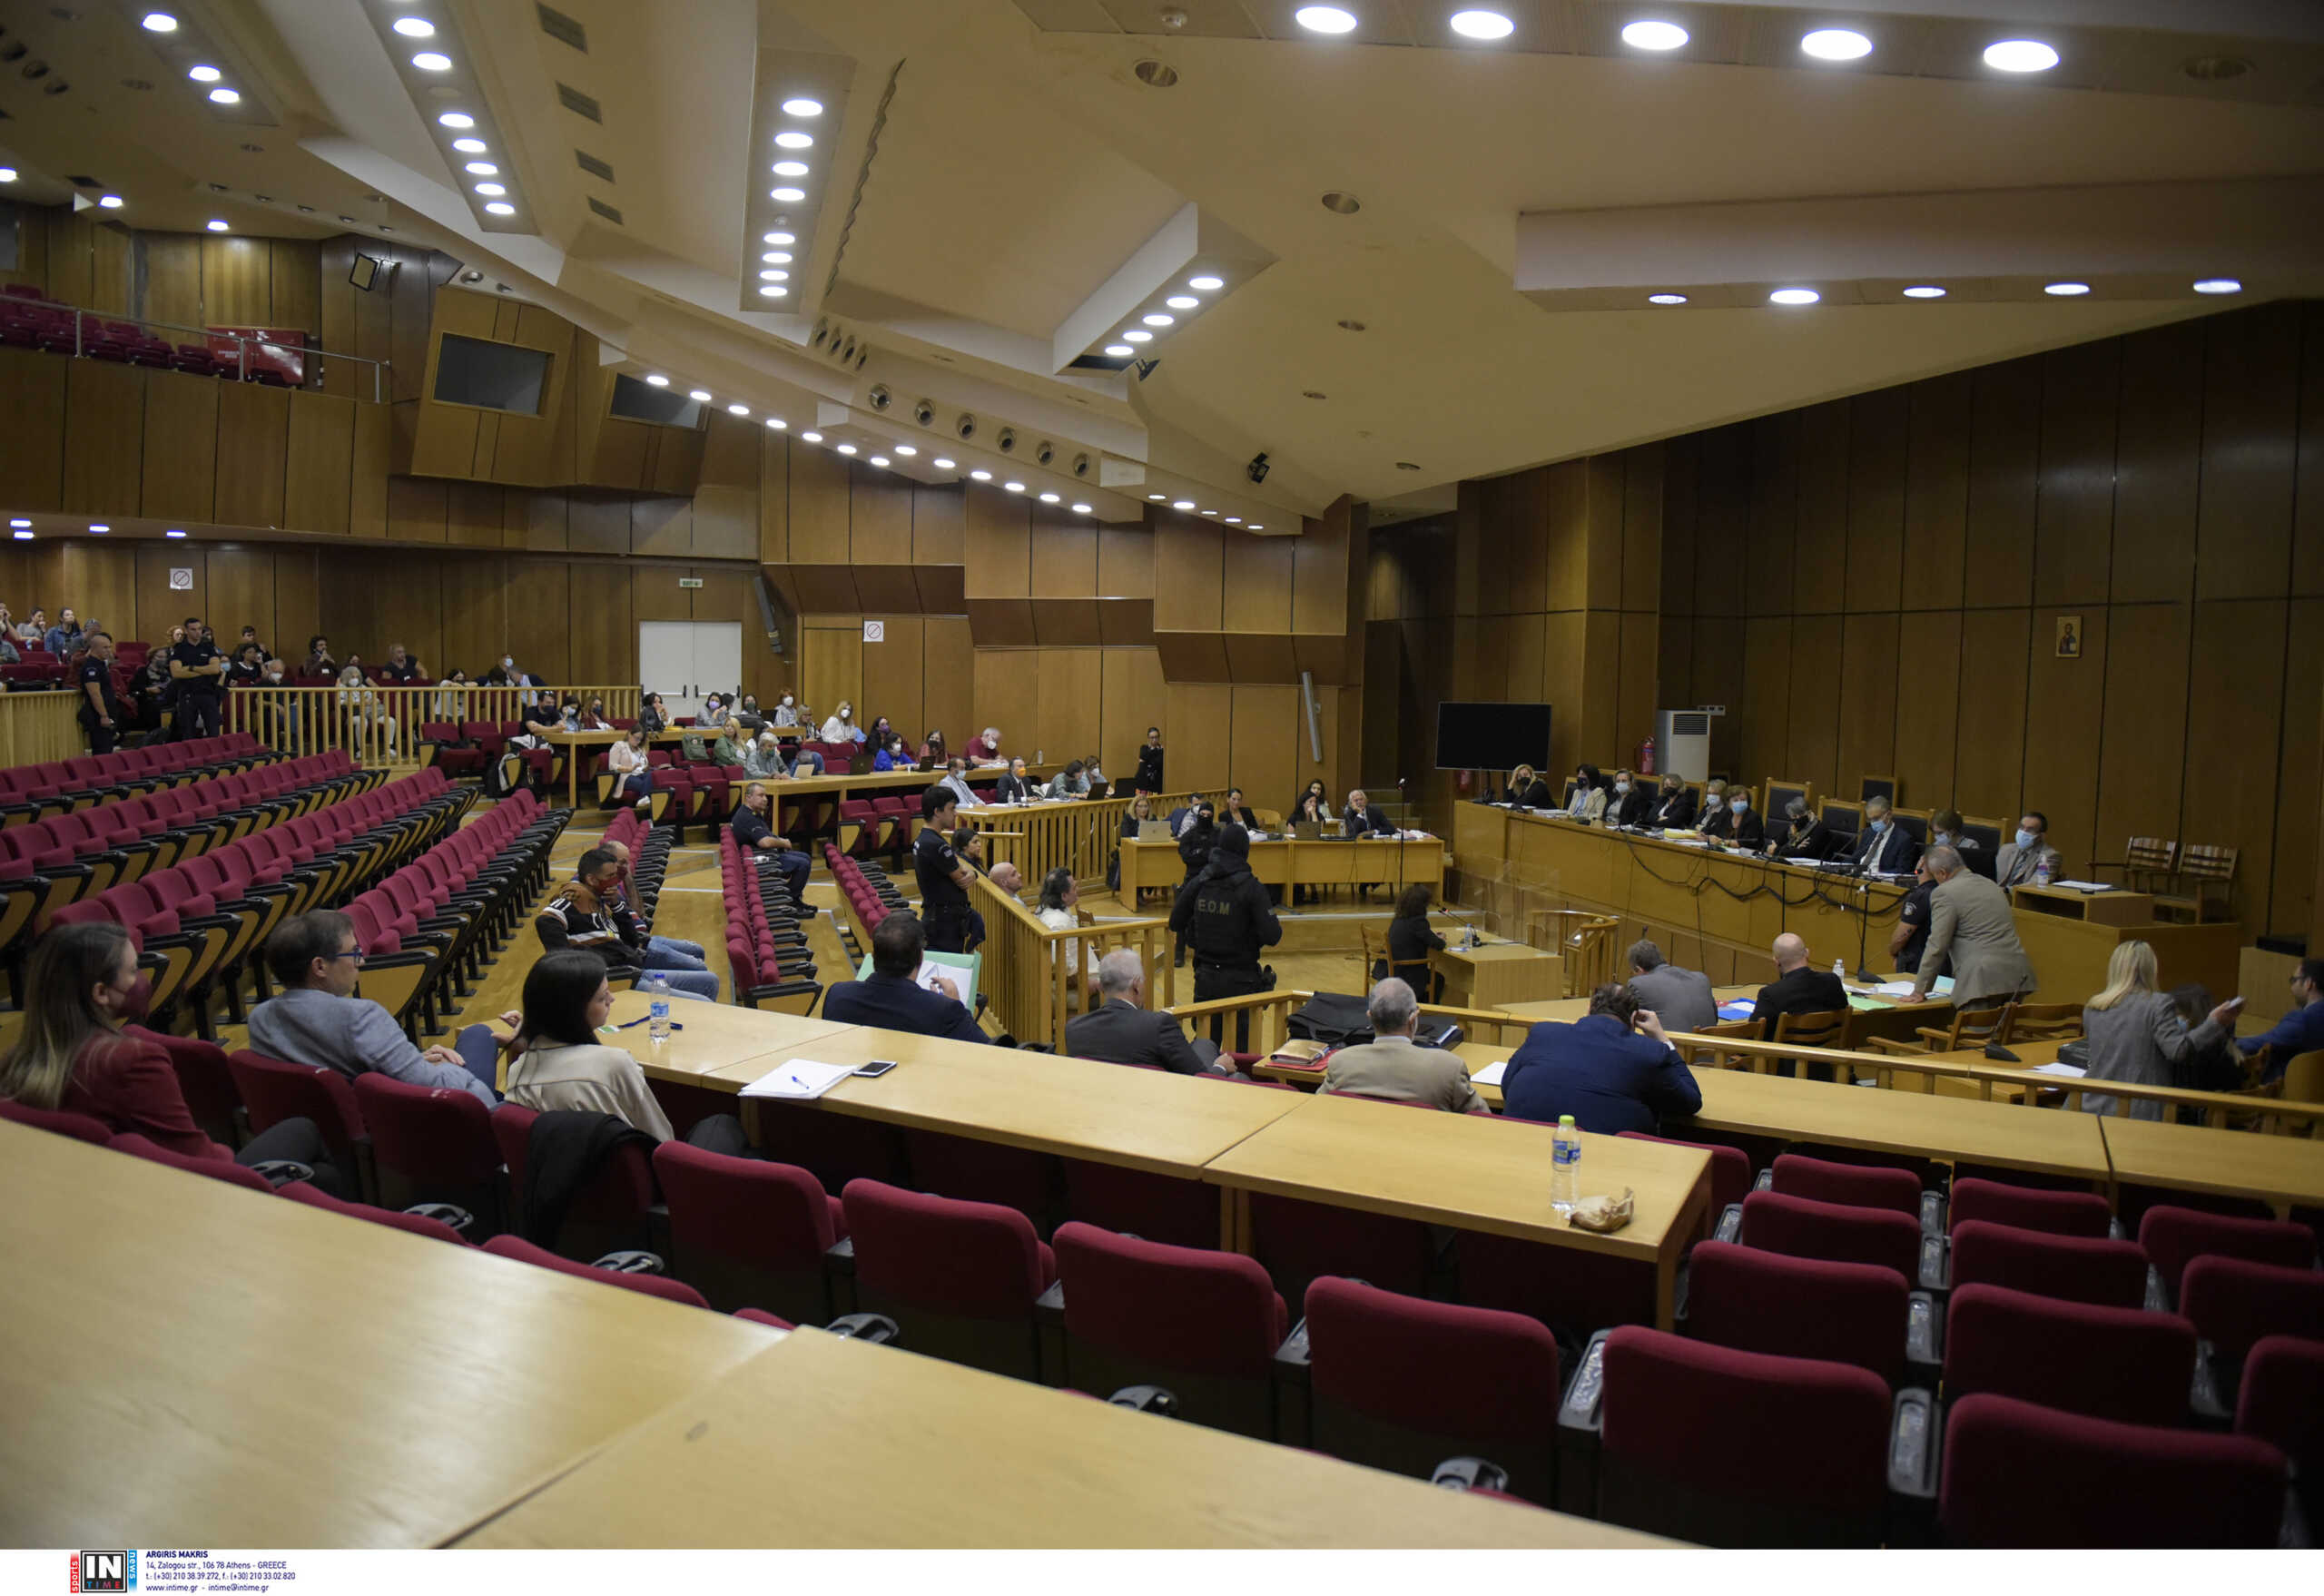 Μάτι: Βρέθηκε μεγάλη αίθουσα για την δίκη μετά τις εικόνες ντροπής – Θα γίνει στο Εφετείο της Αθήνας